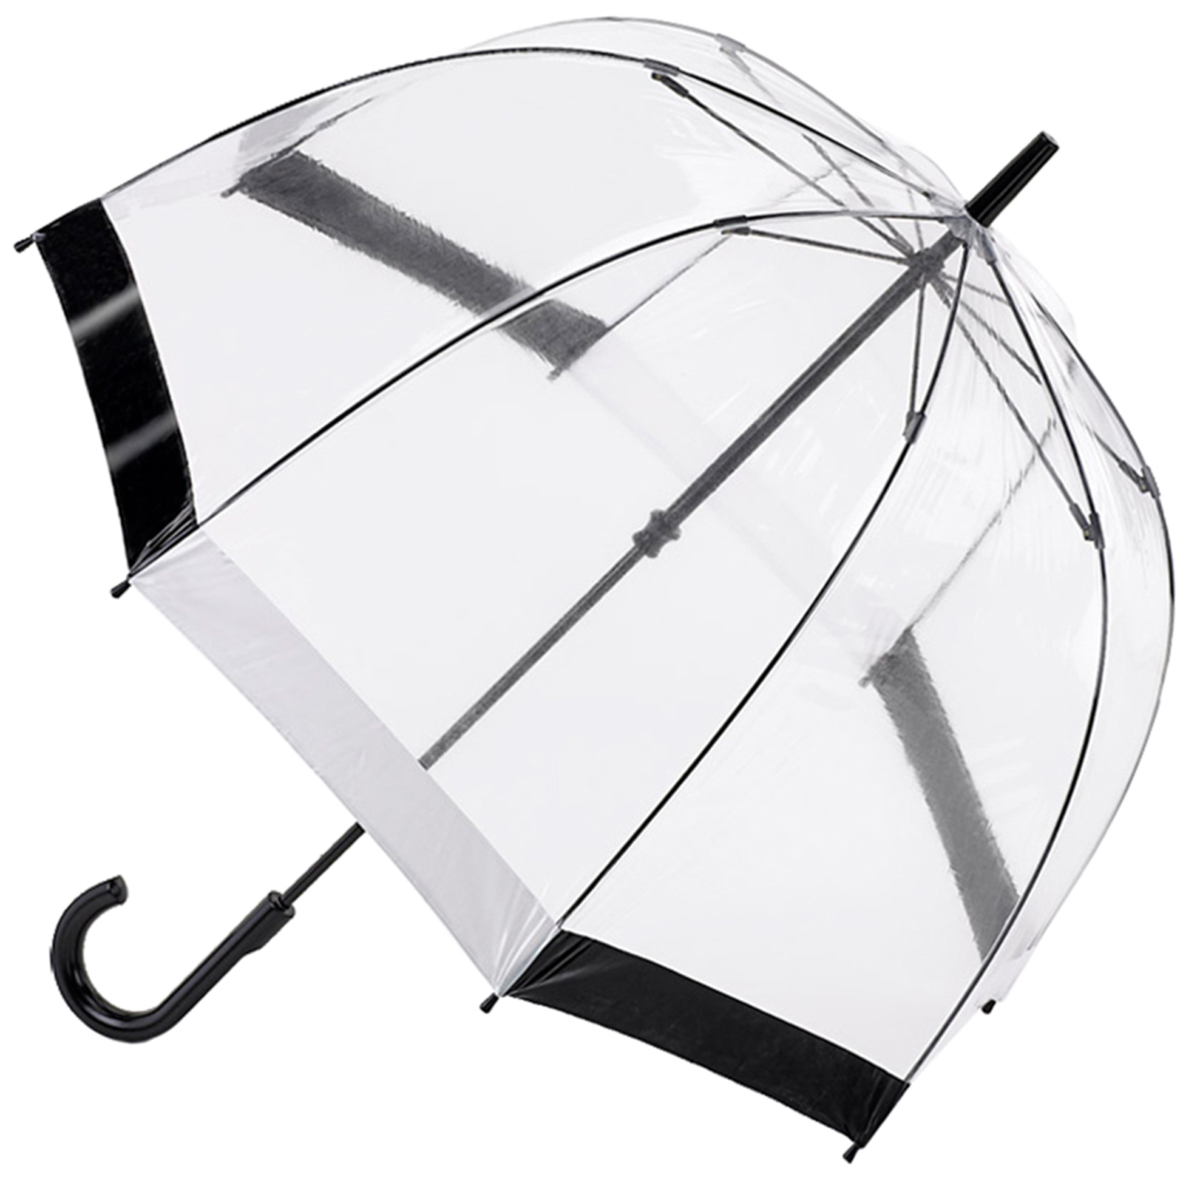 Fulton Birdcage Clear Dome Umbrella - Black/White Trim